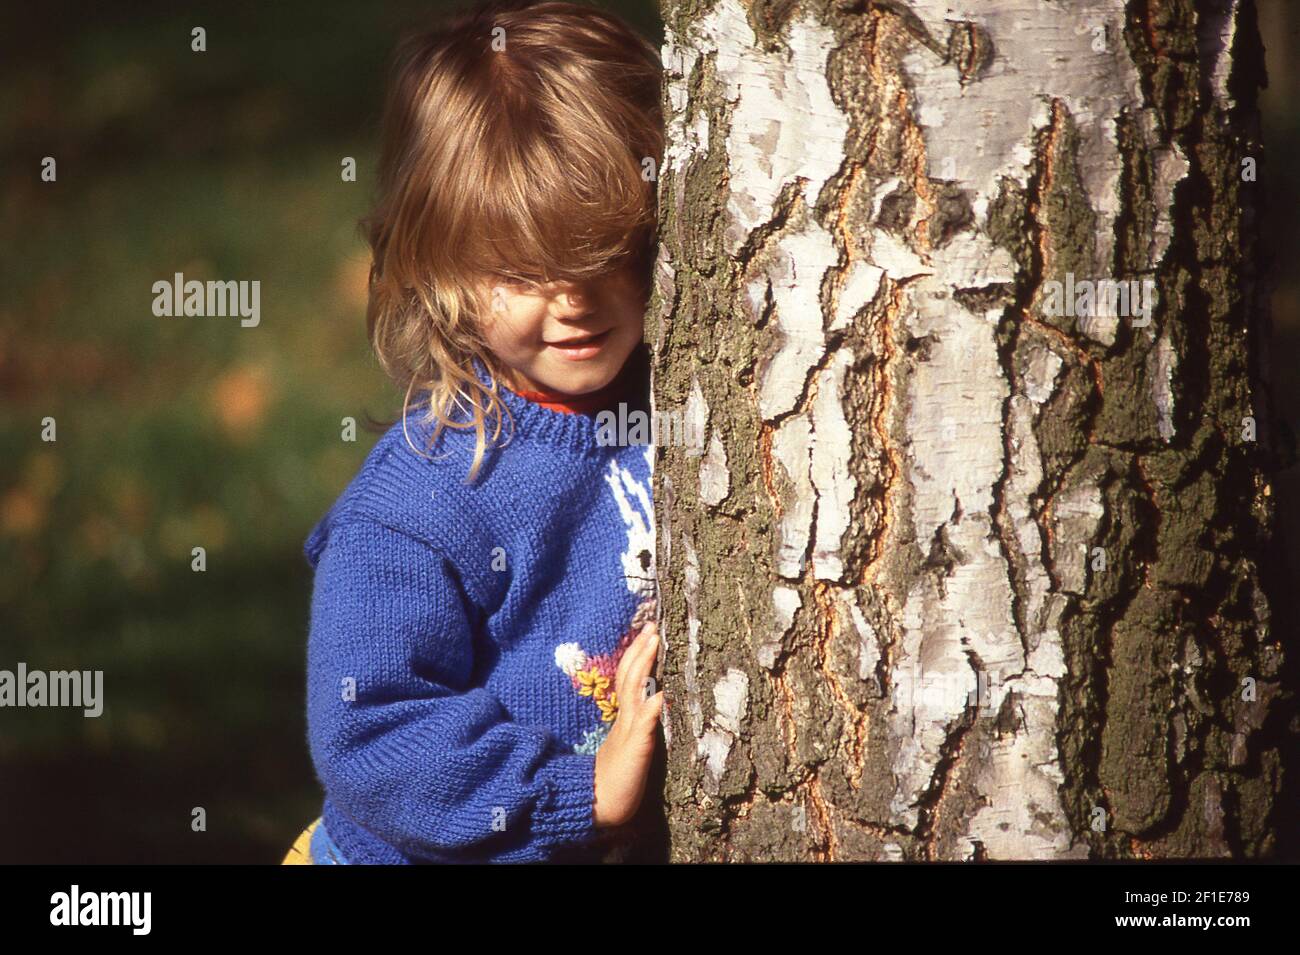 Jeune fille qui fait le tour de l'arbre, Winkfield, Berkshire, Angleterre, Royaume-Uni Banque D'Images